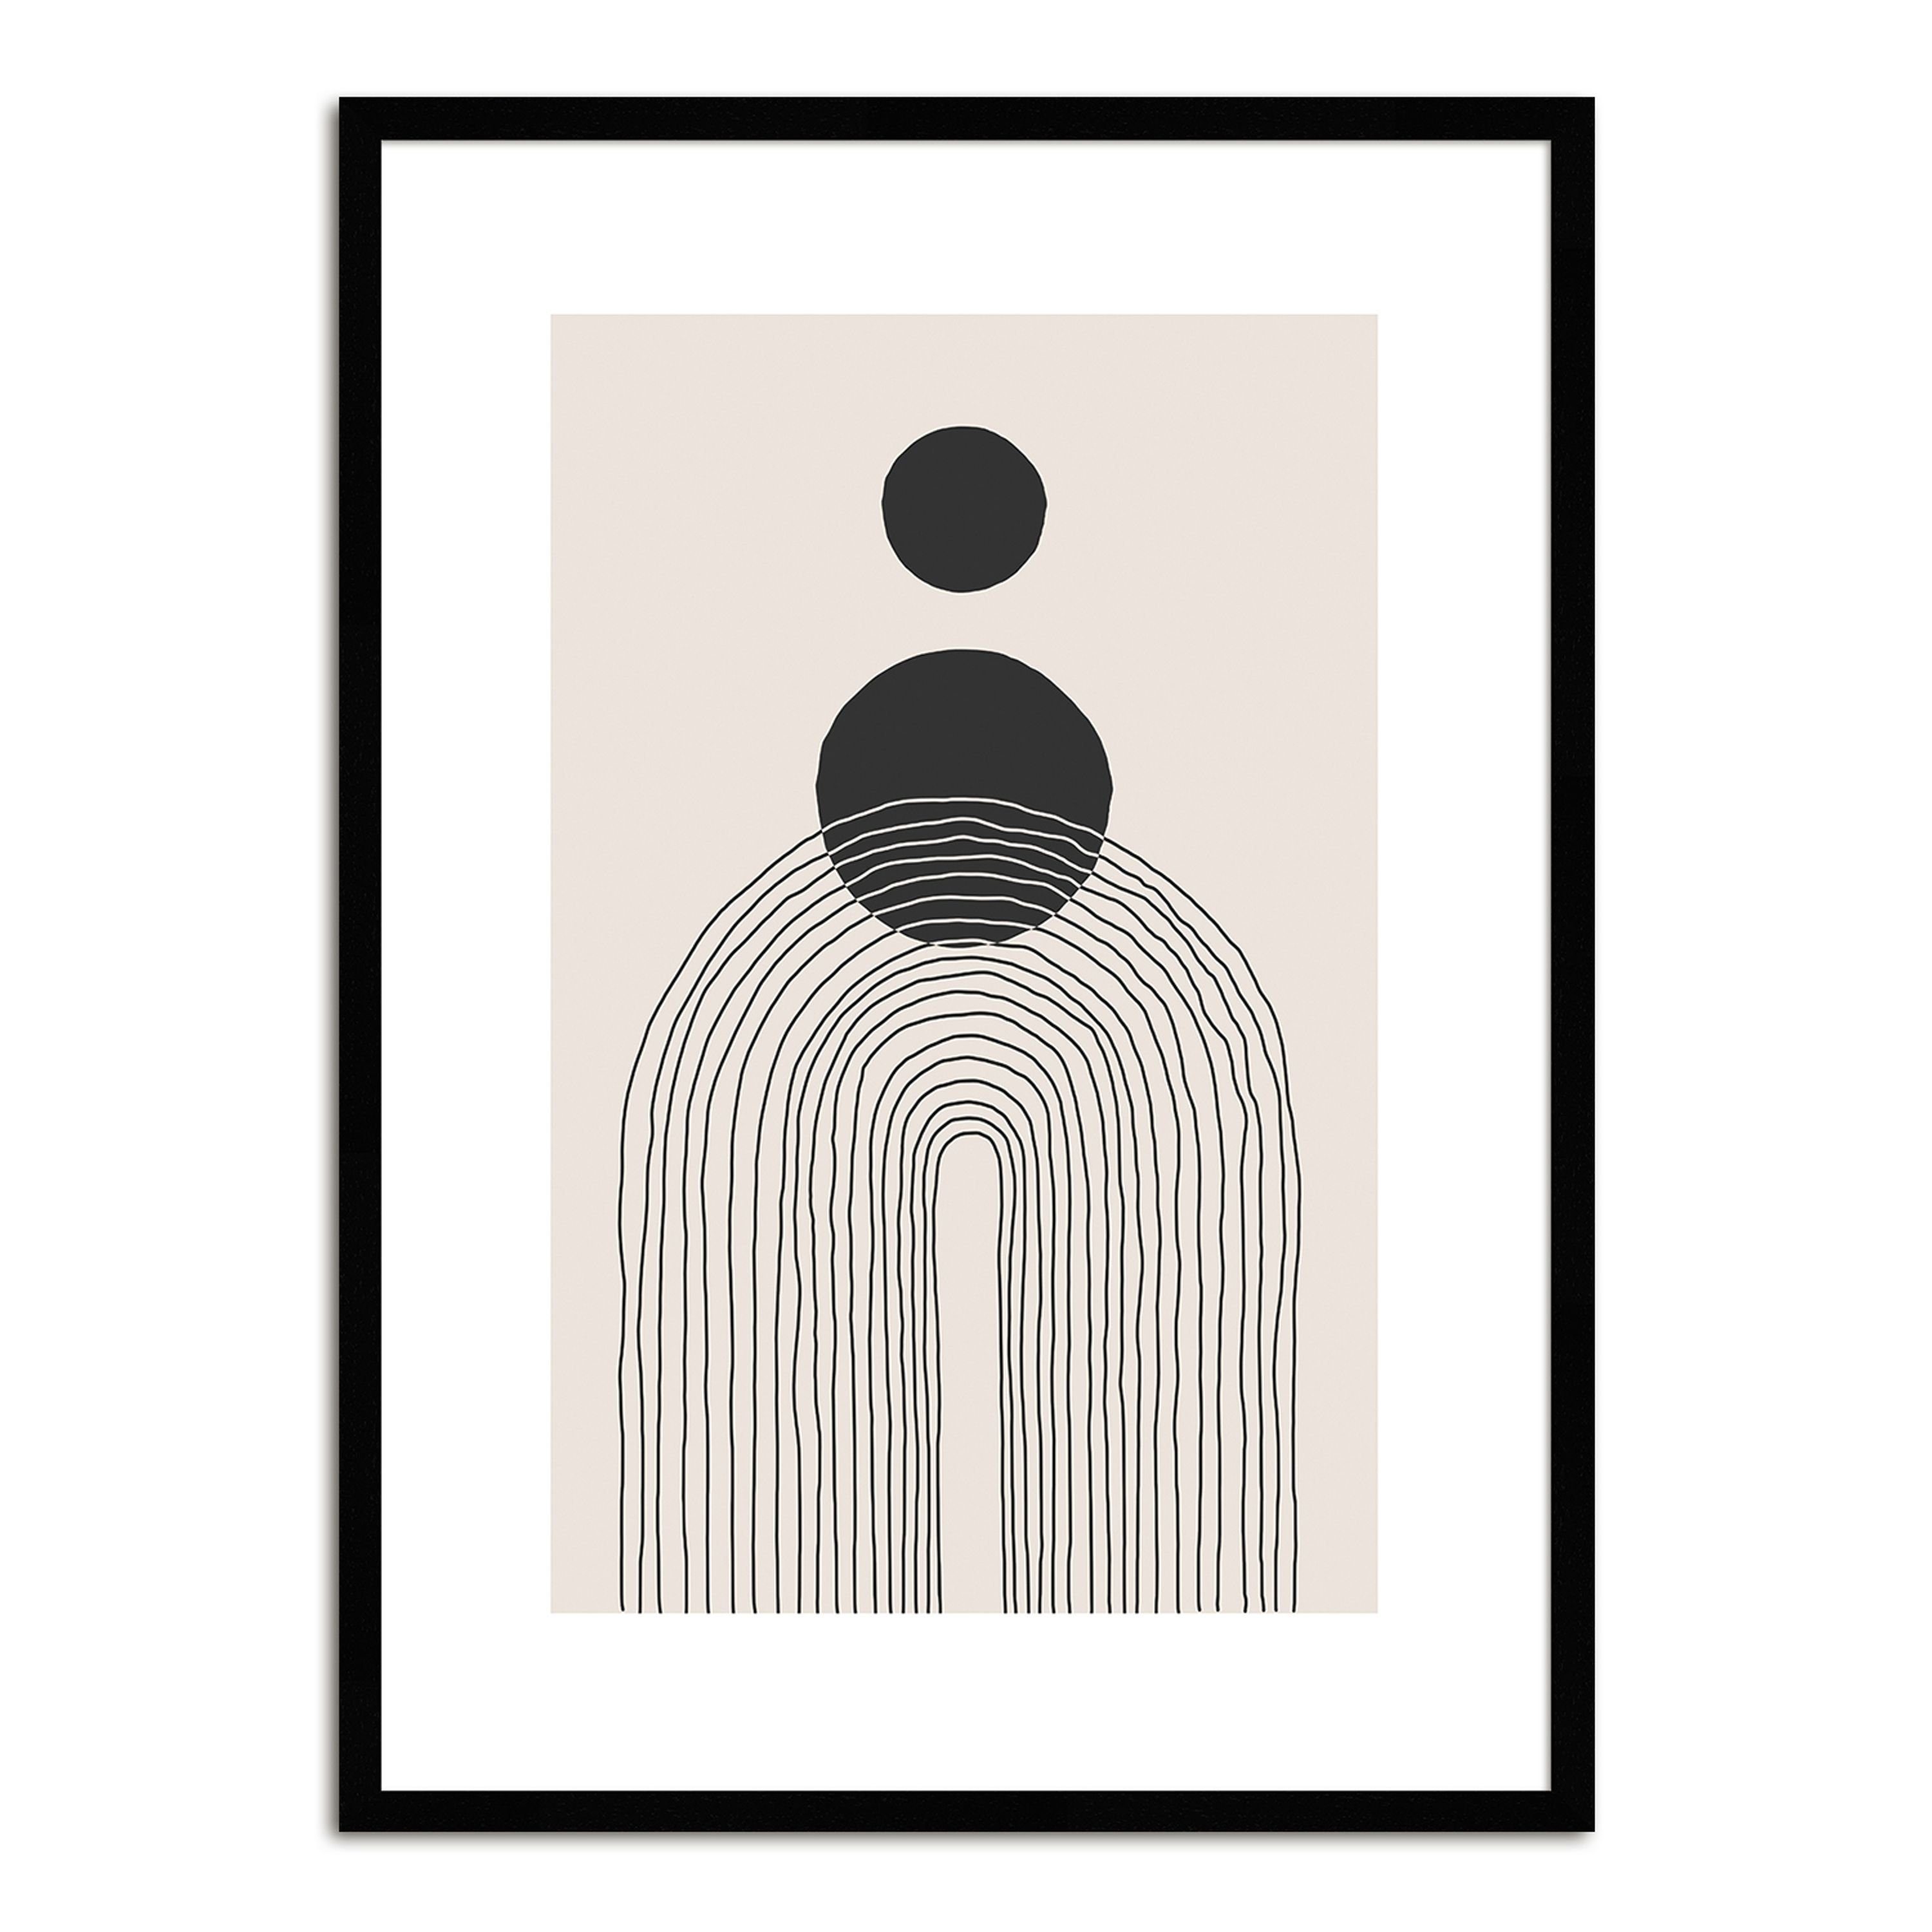 artissimo Bild mit Rahmen schwarz-weiß, Design-Poster / Bild schwarz-weiß mit Muster 51x71cm gerahmt / skandinavische Holz-Rahmen